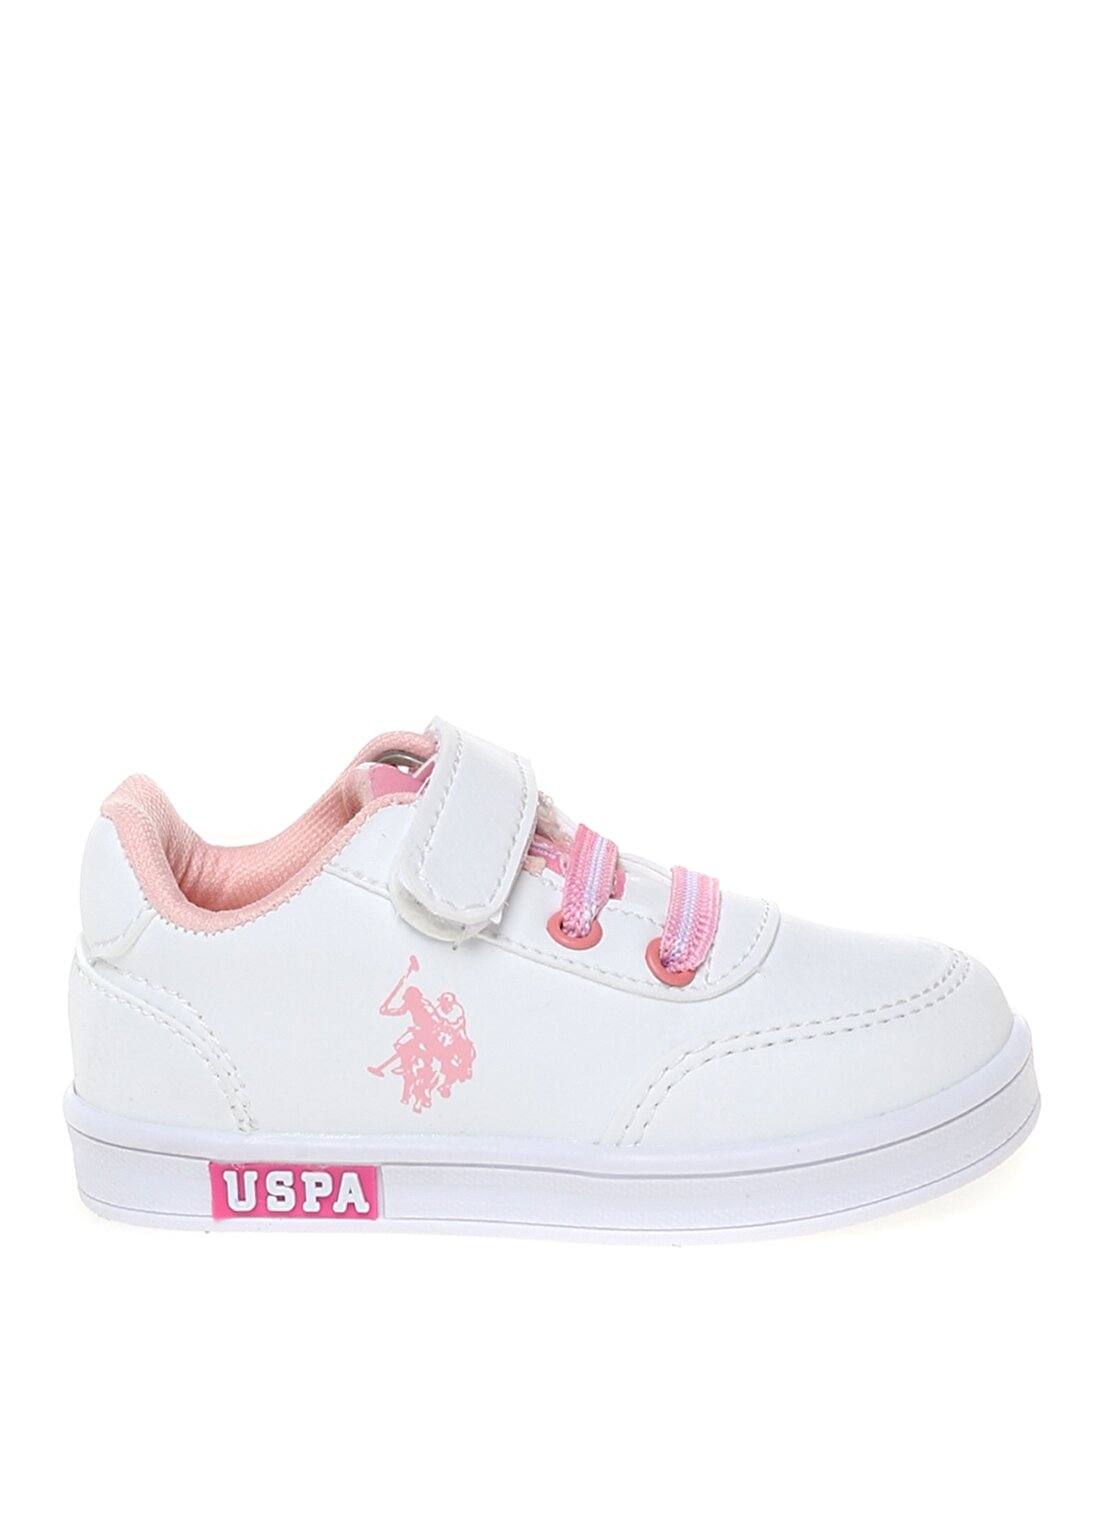 U.S. Polo Assn. Beyaz Kız Çocuk Yürüyüş Ayakkabısı